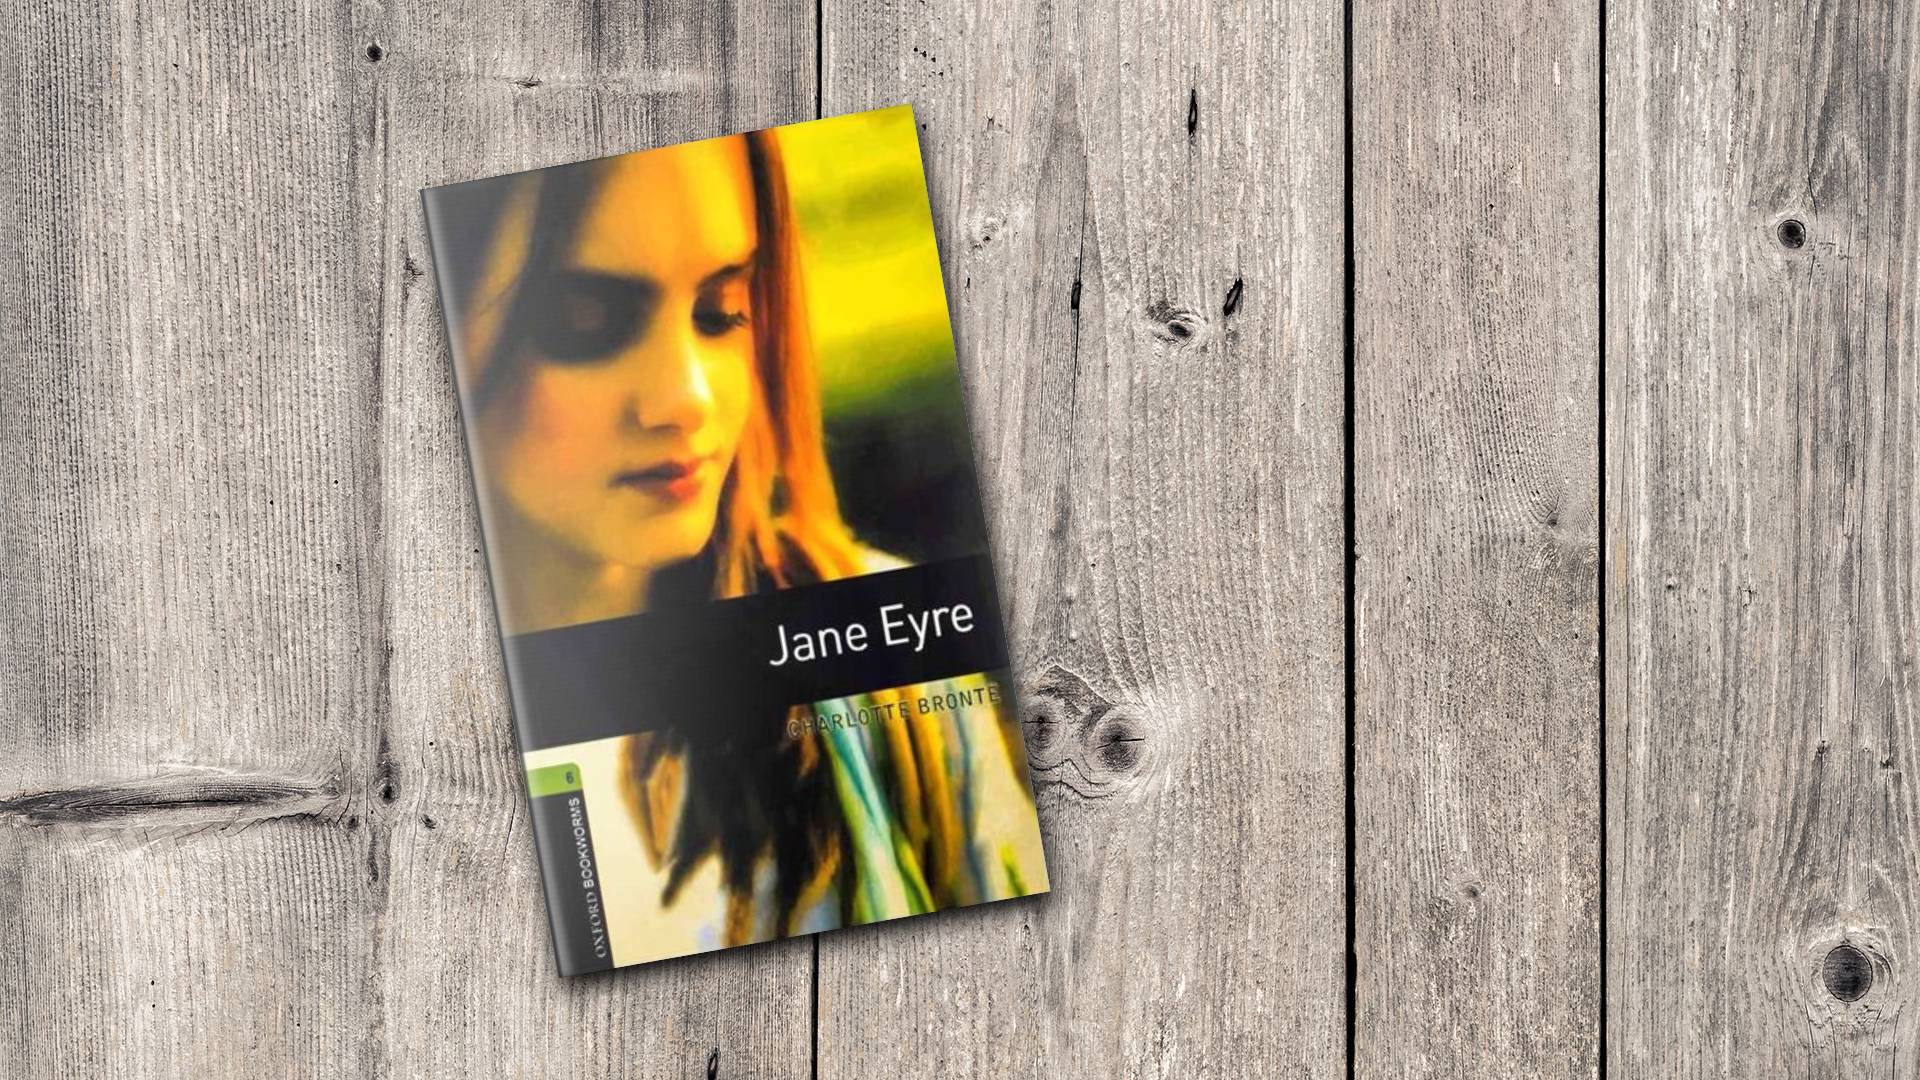 خرید کتاب داستان کوتاه انگلیسی | فروشگاه اینترنتی کتاب زبان | Oxford Bookworms 6 Jane Eyre | آکسفورد بوک ورمز شش جین ایر